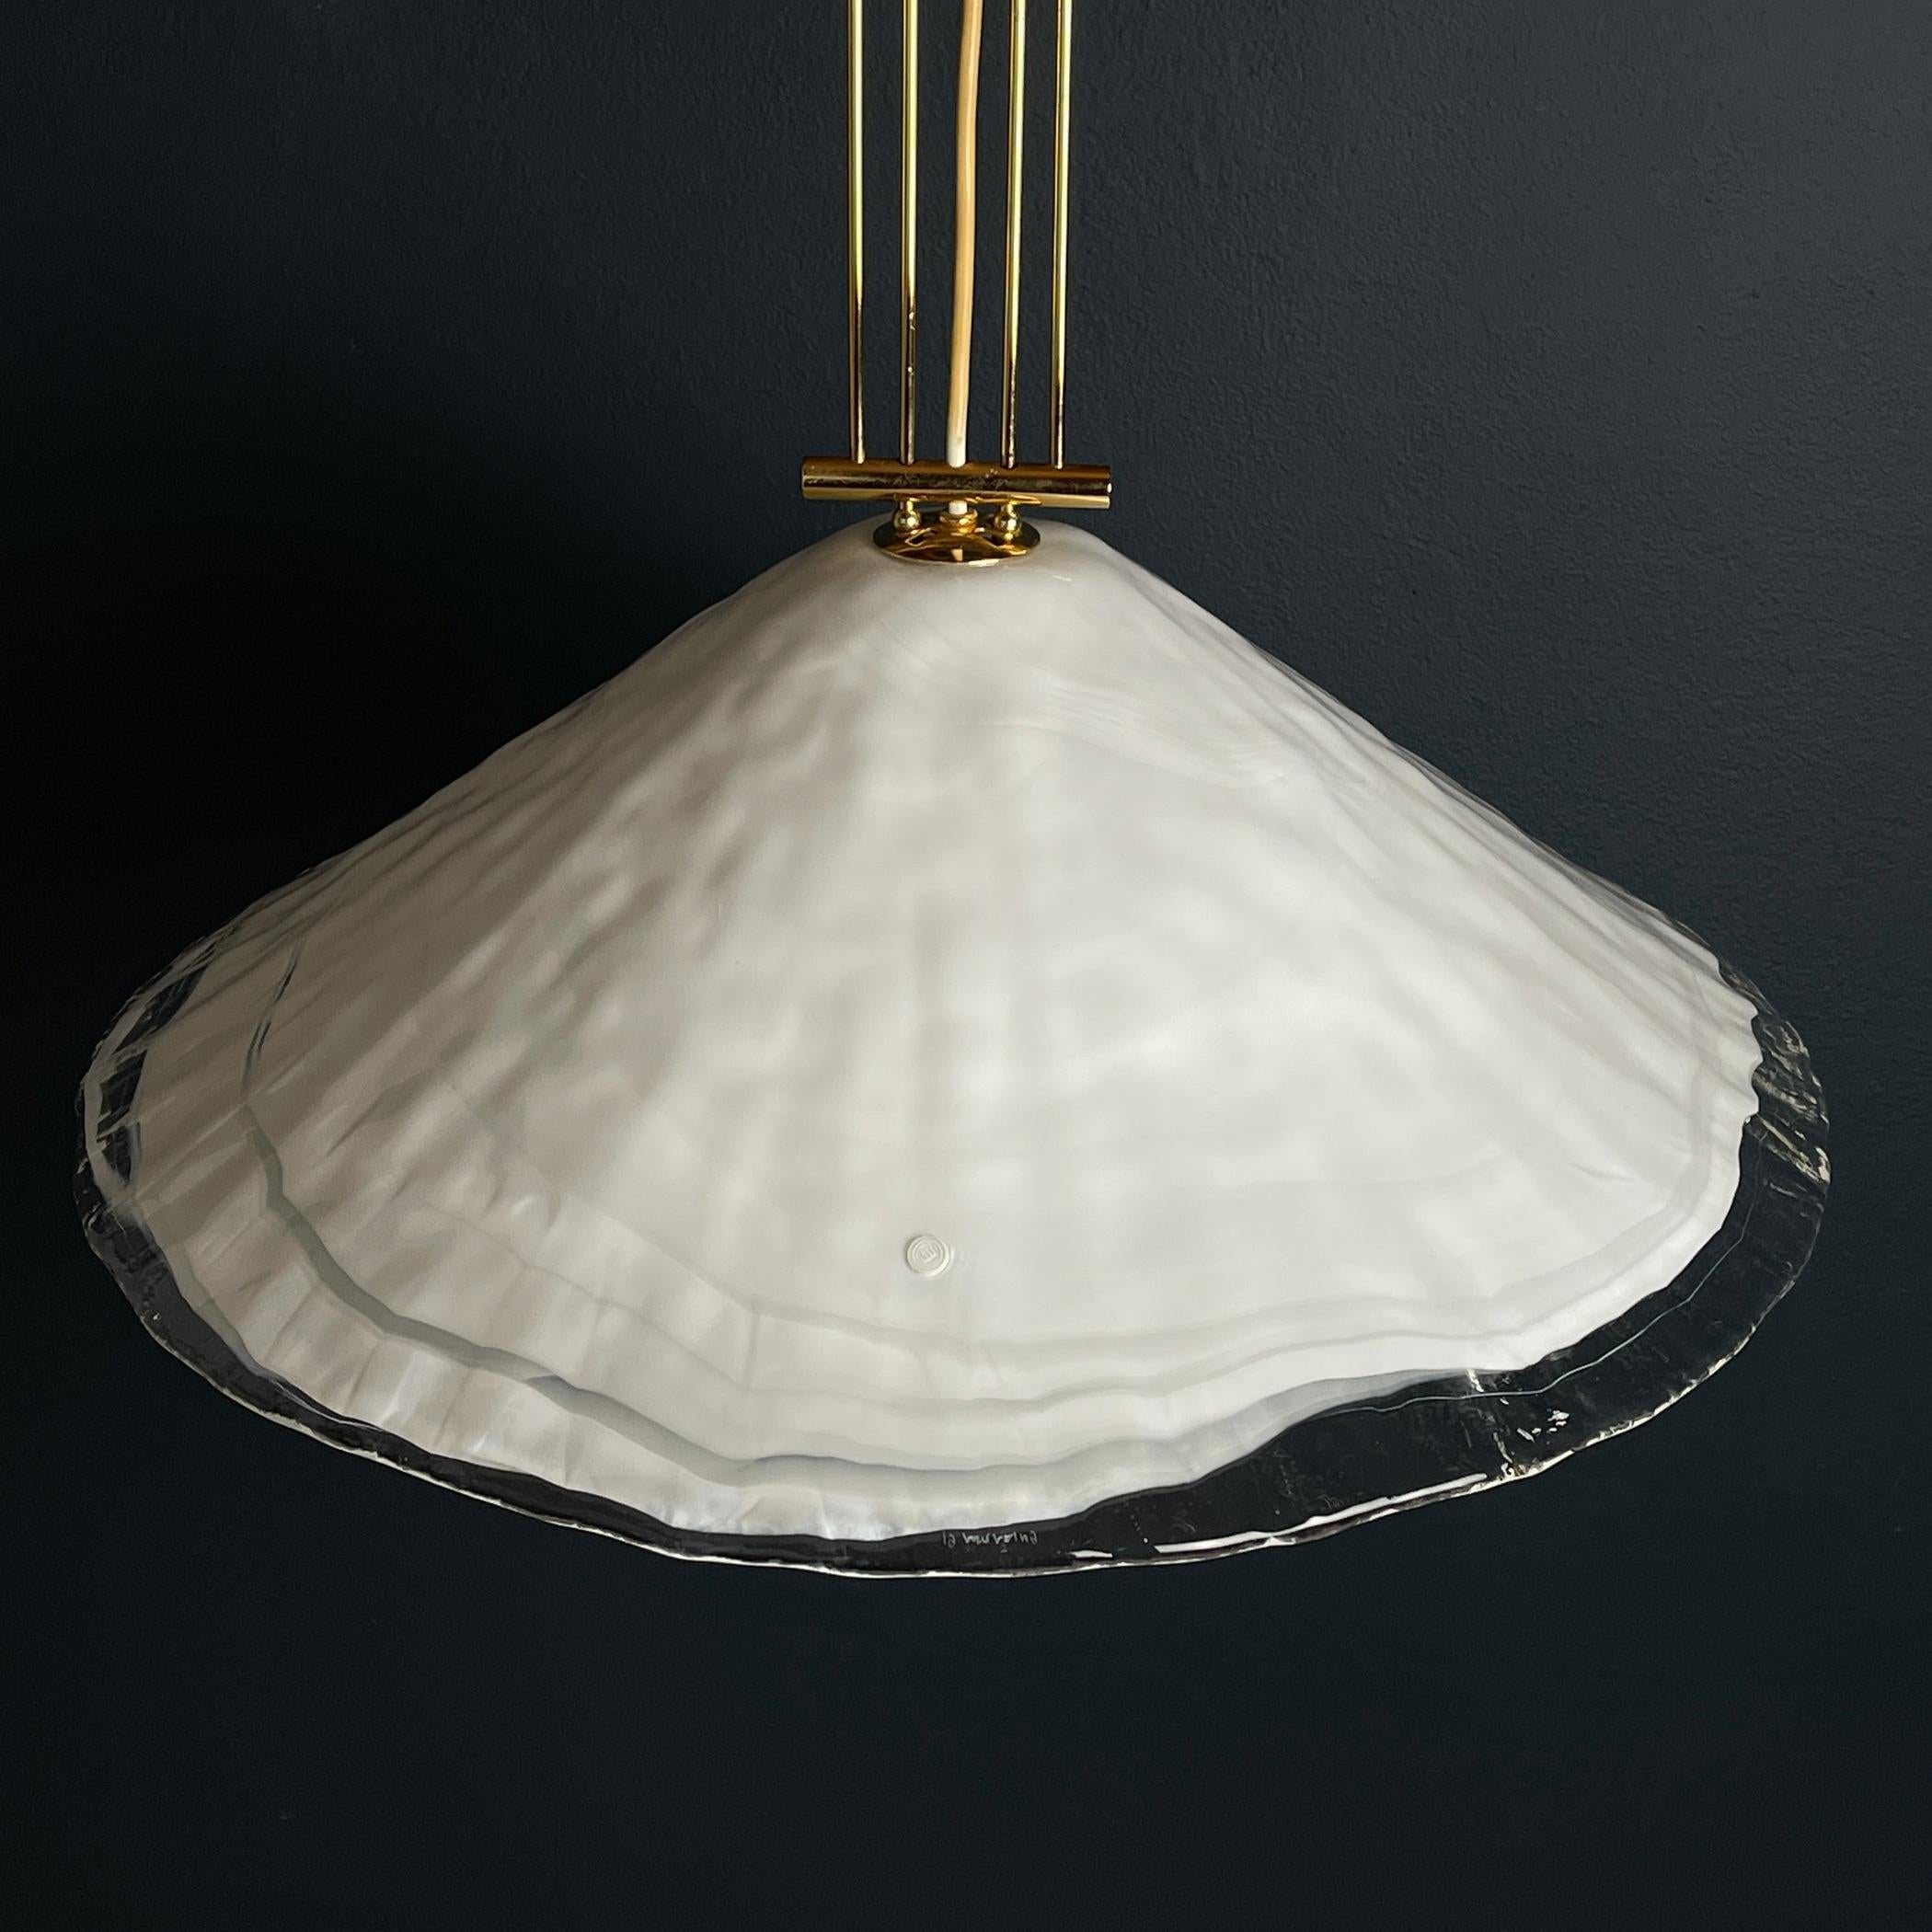 Illuminez votre espace avec l'élégance intemporelle de cette magnifique grande lampe suspendue vintage de Murano, une création du fabricant estimé 